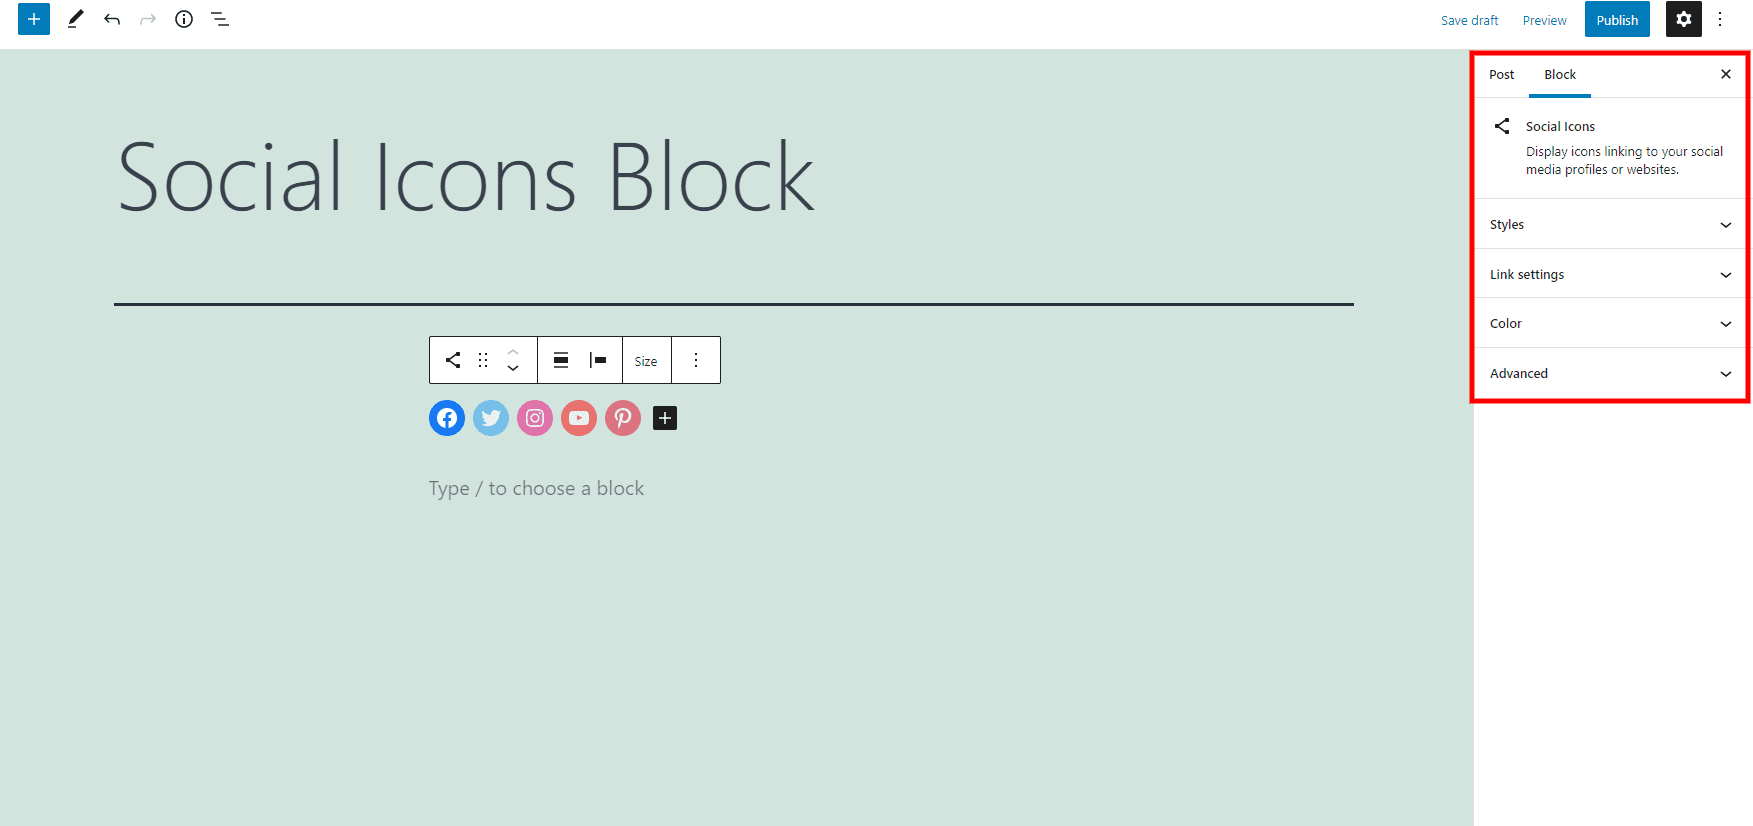 Social Icons Block Settings